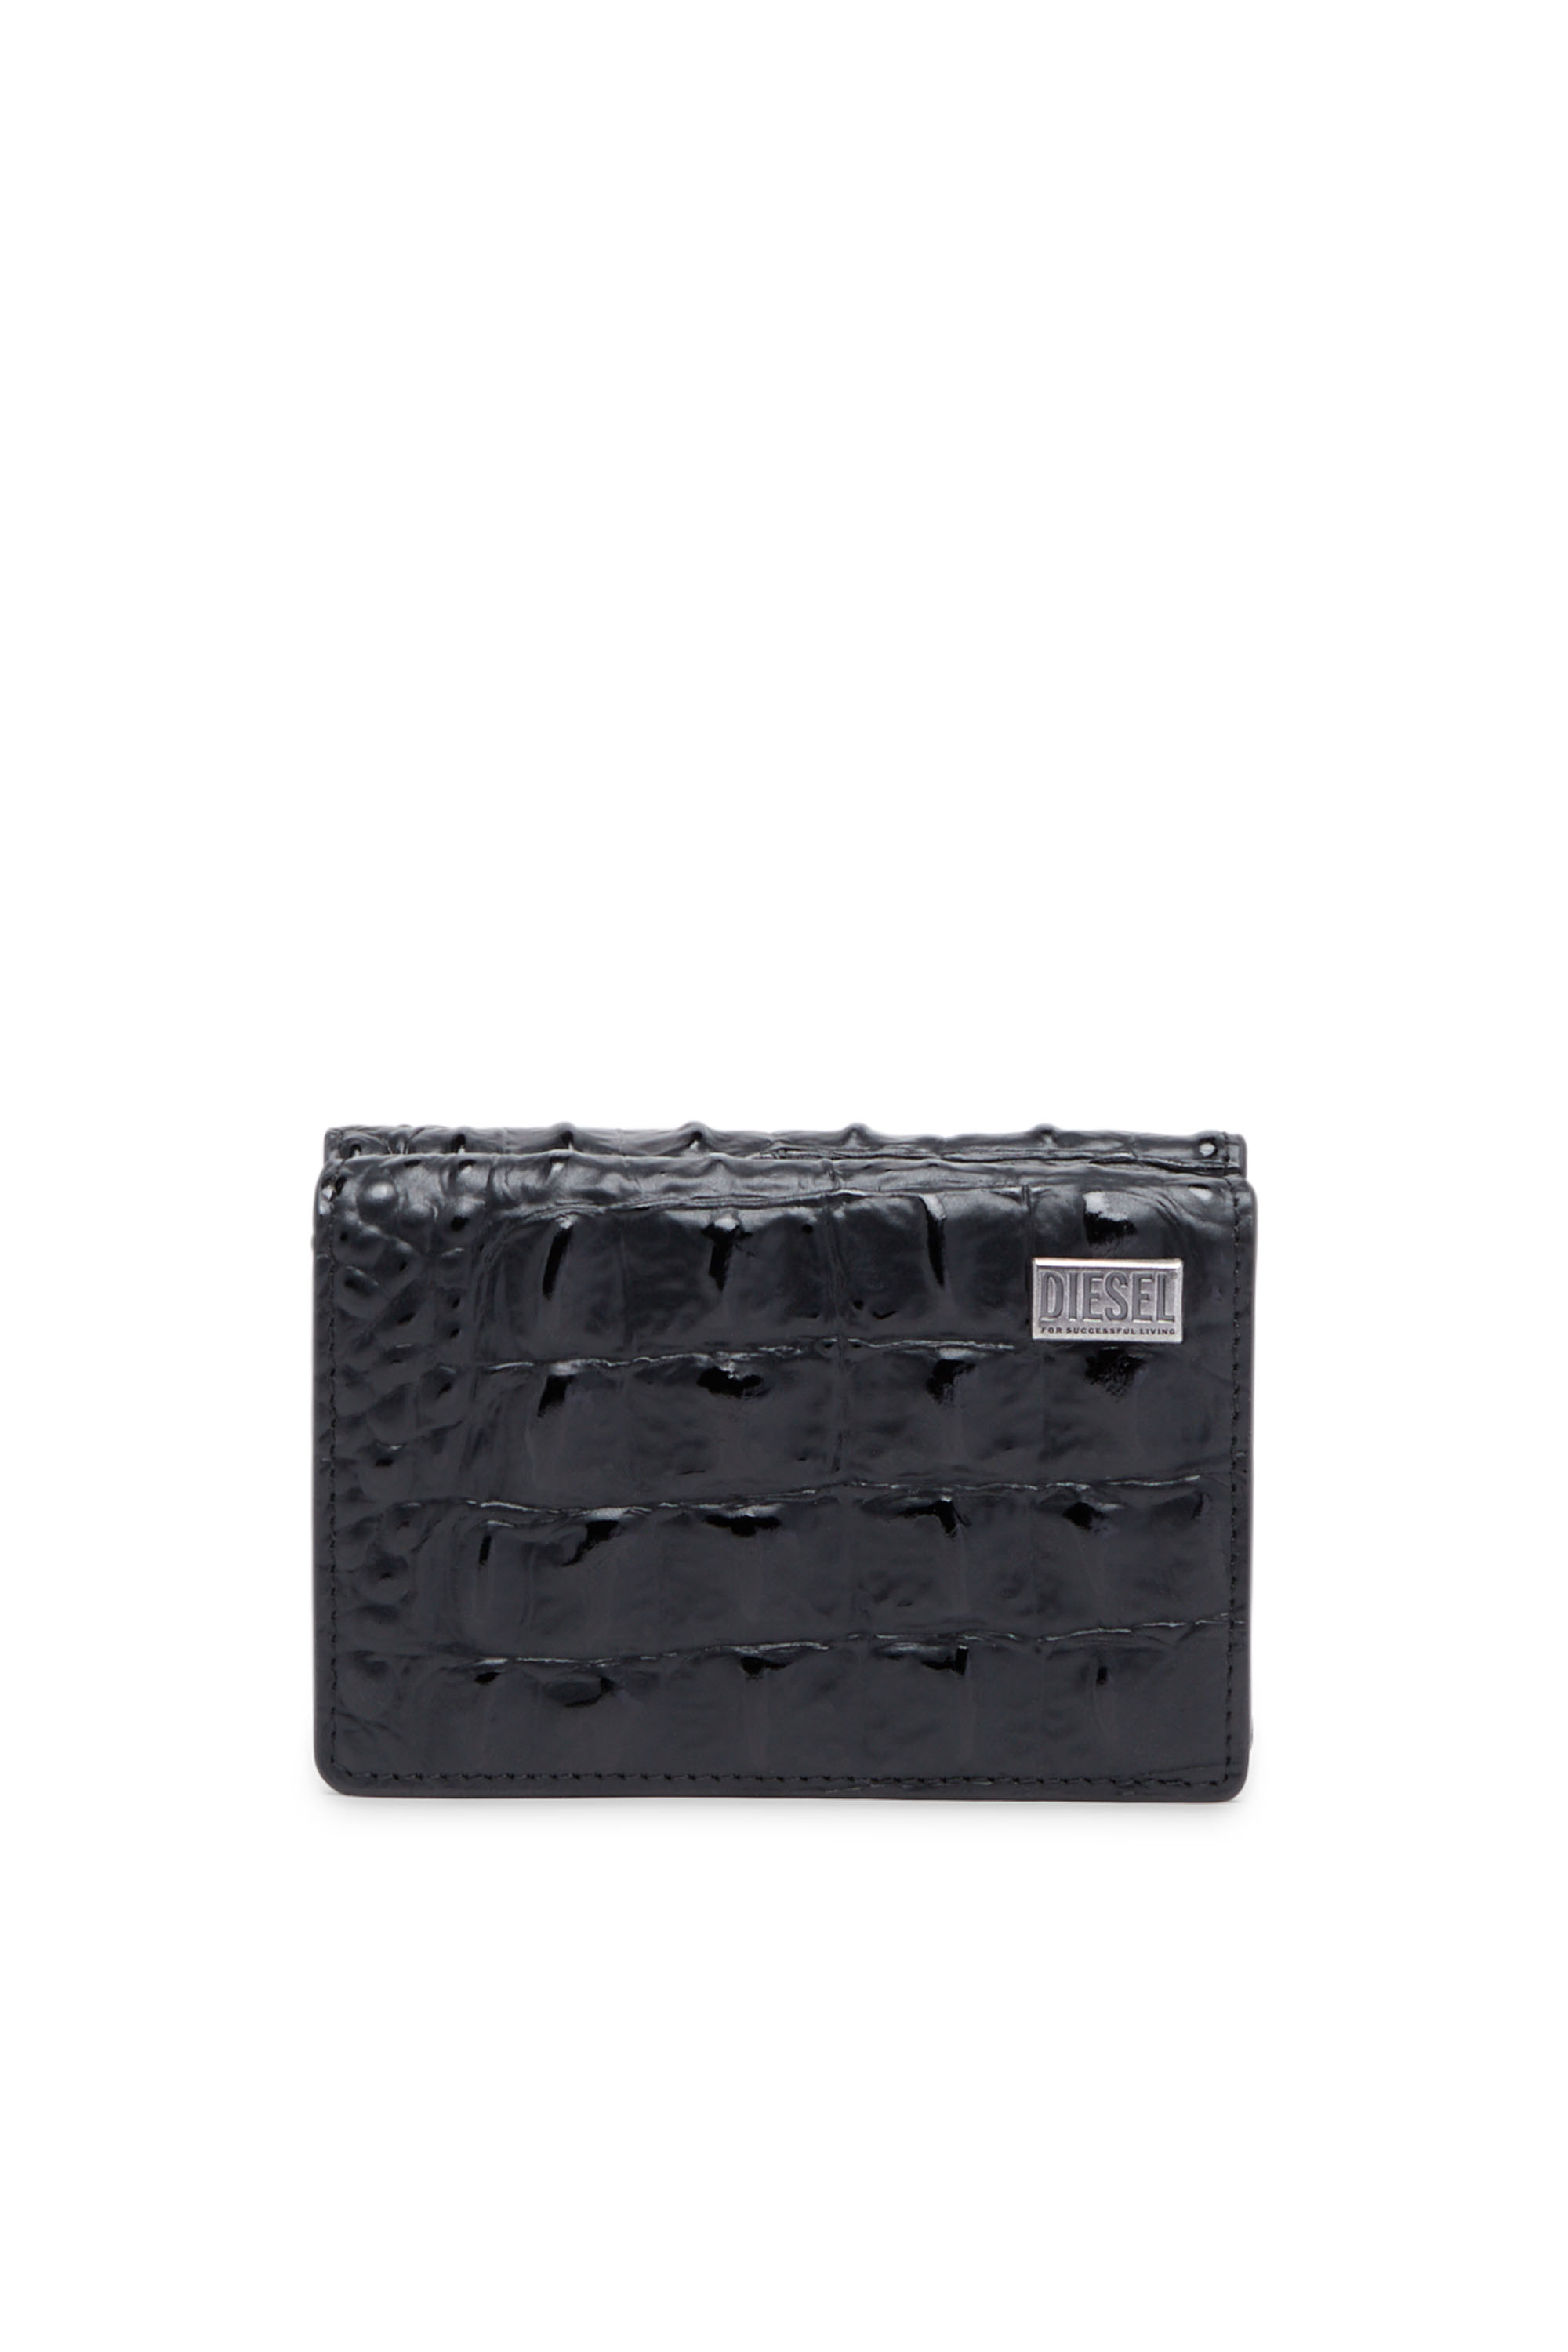 Diesel - Tri-fold wallet in croc-effect leather - Small Wallets - Man - Black